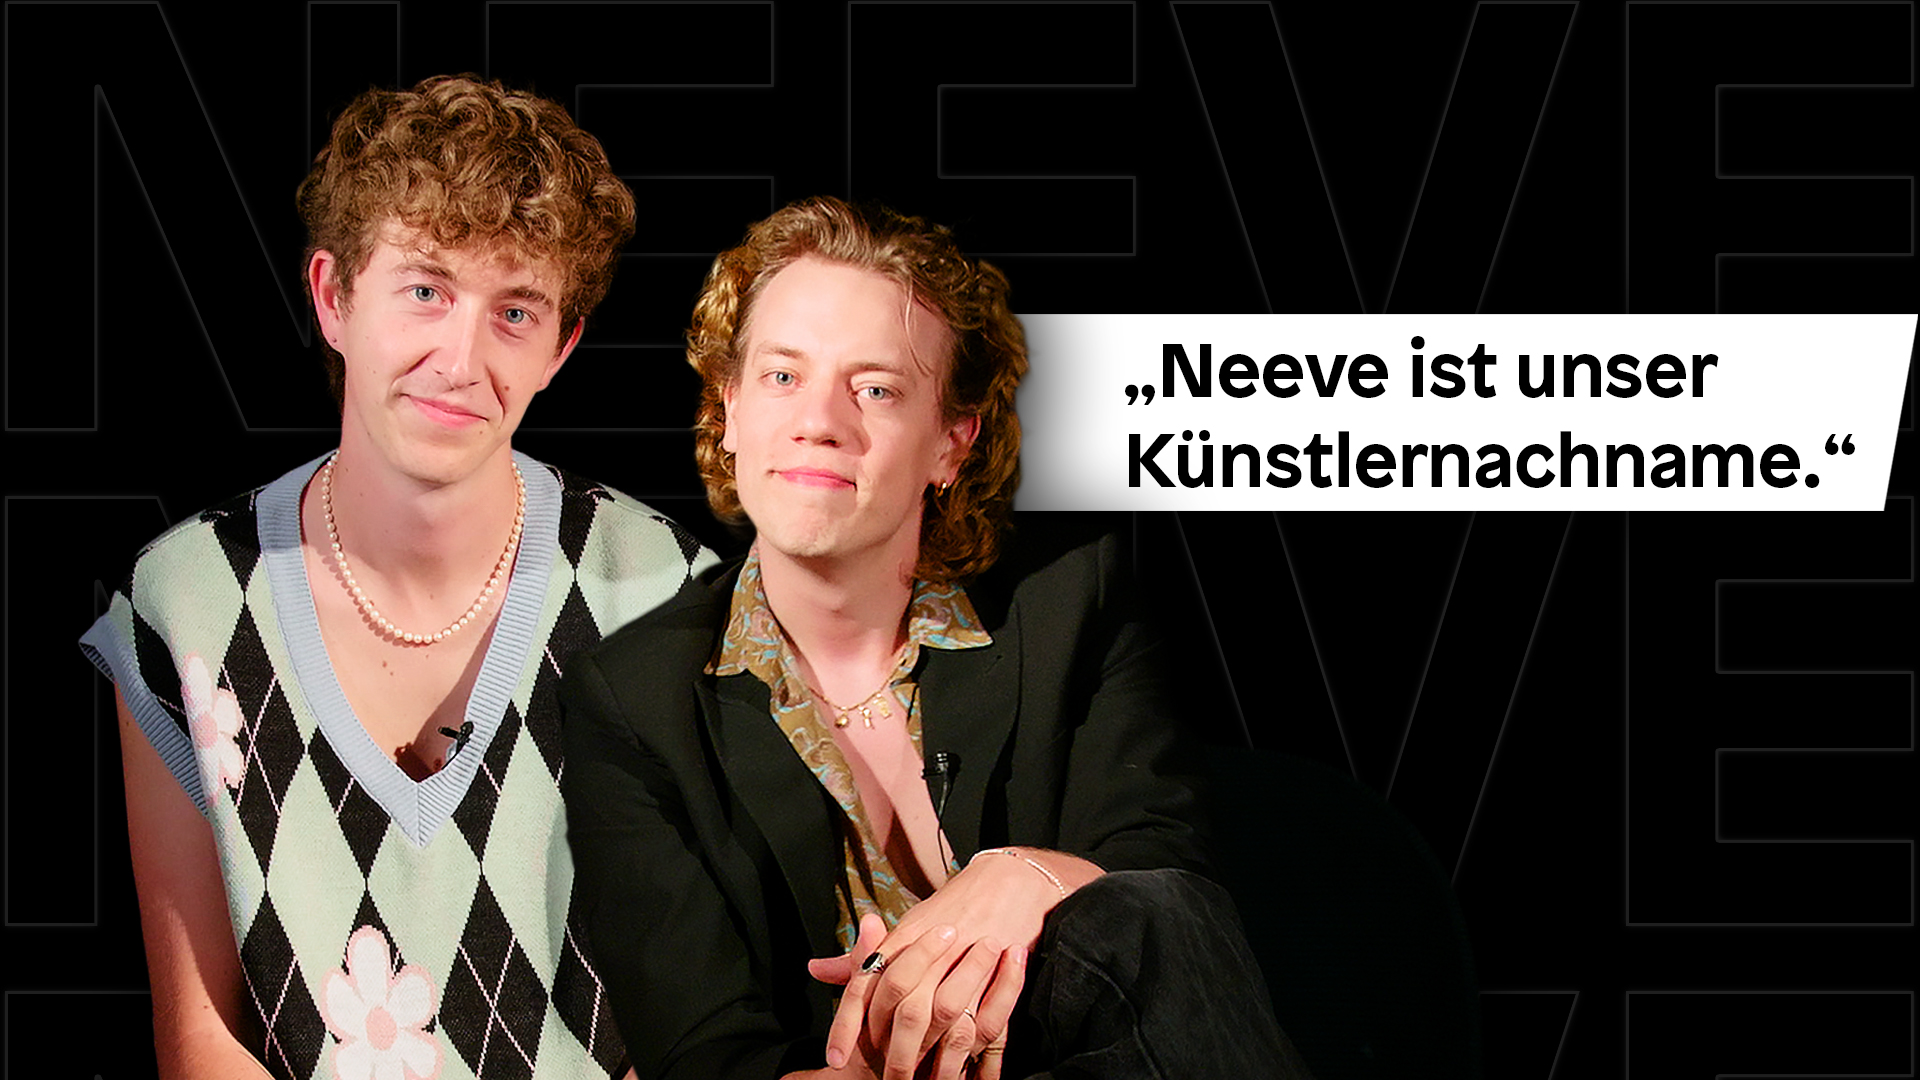 Neeve im Interview: "Neeve ist unser Künstlernachname" - DIFFUS